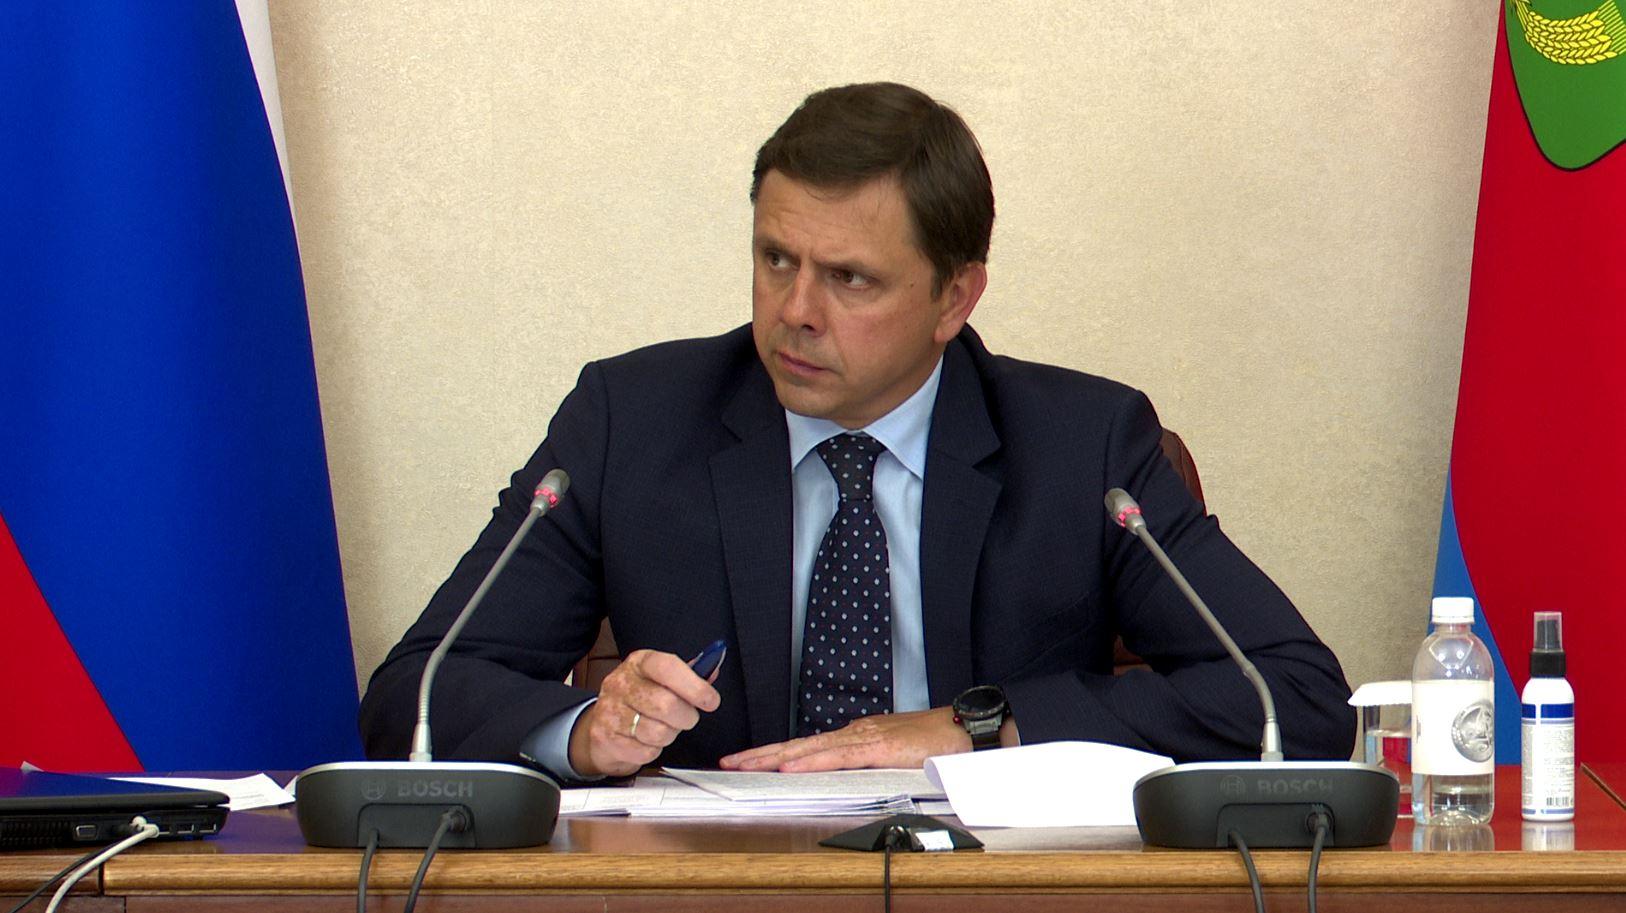 Поддержку участников СВО и их семьи обсудили на личном приеме у губернатора Орловской области